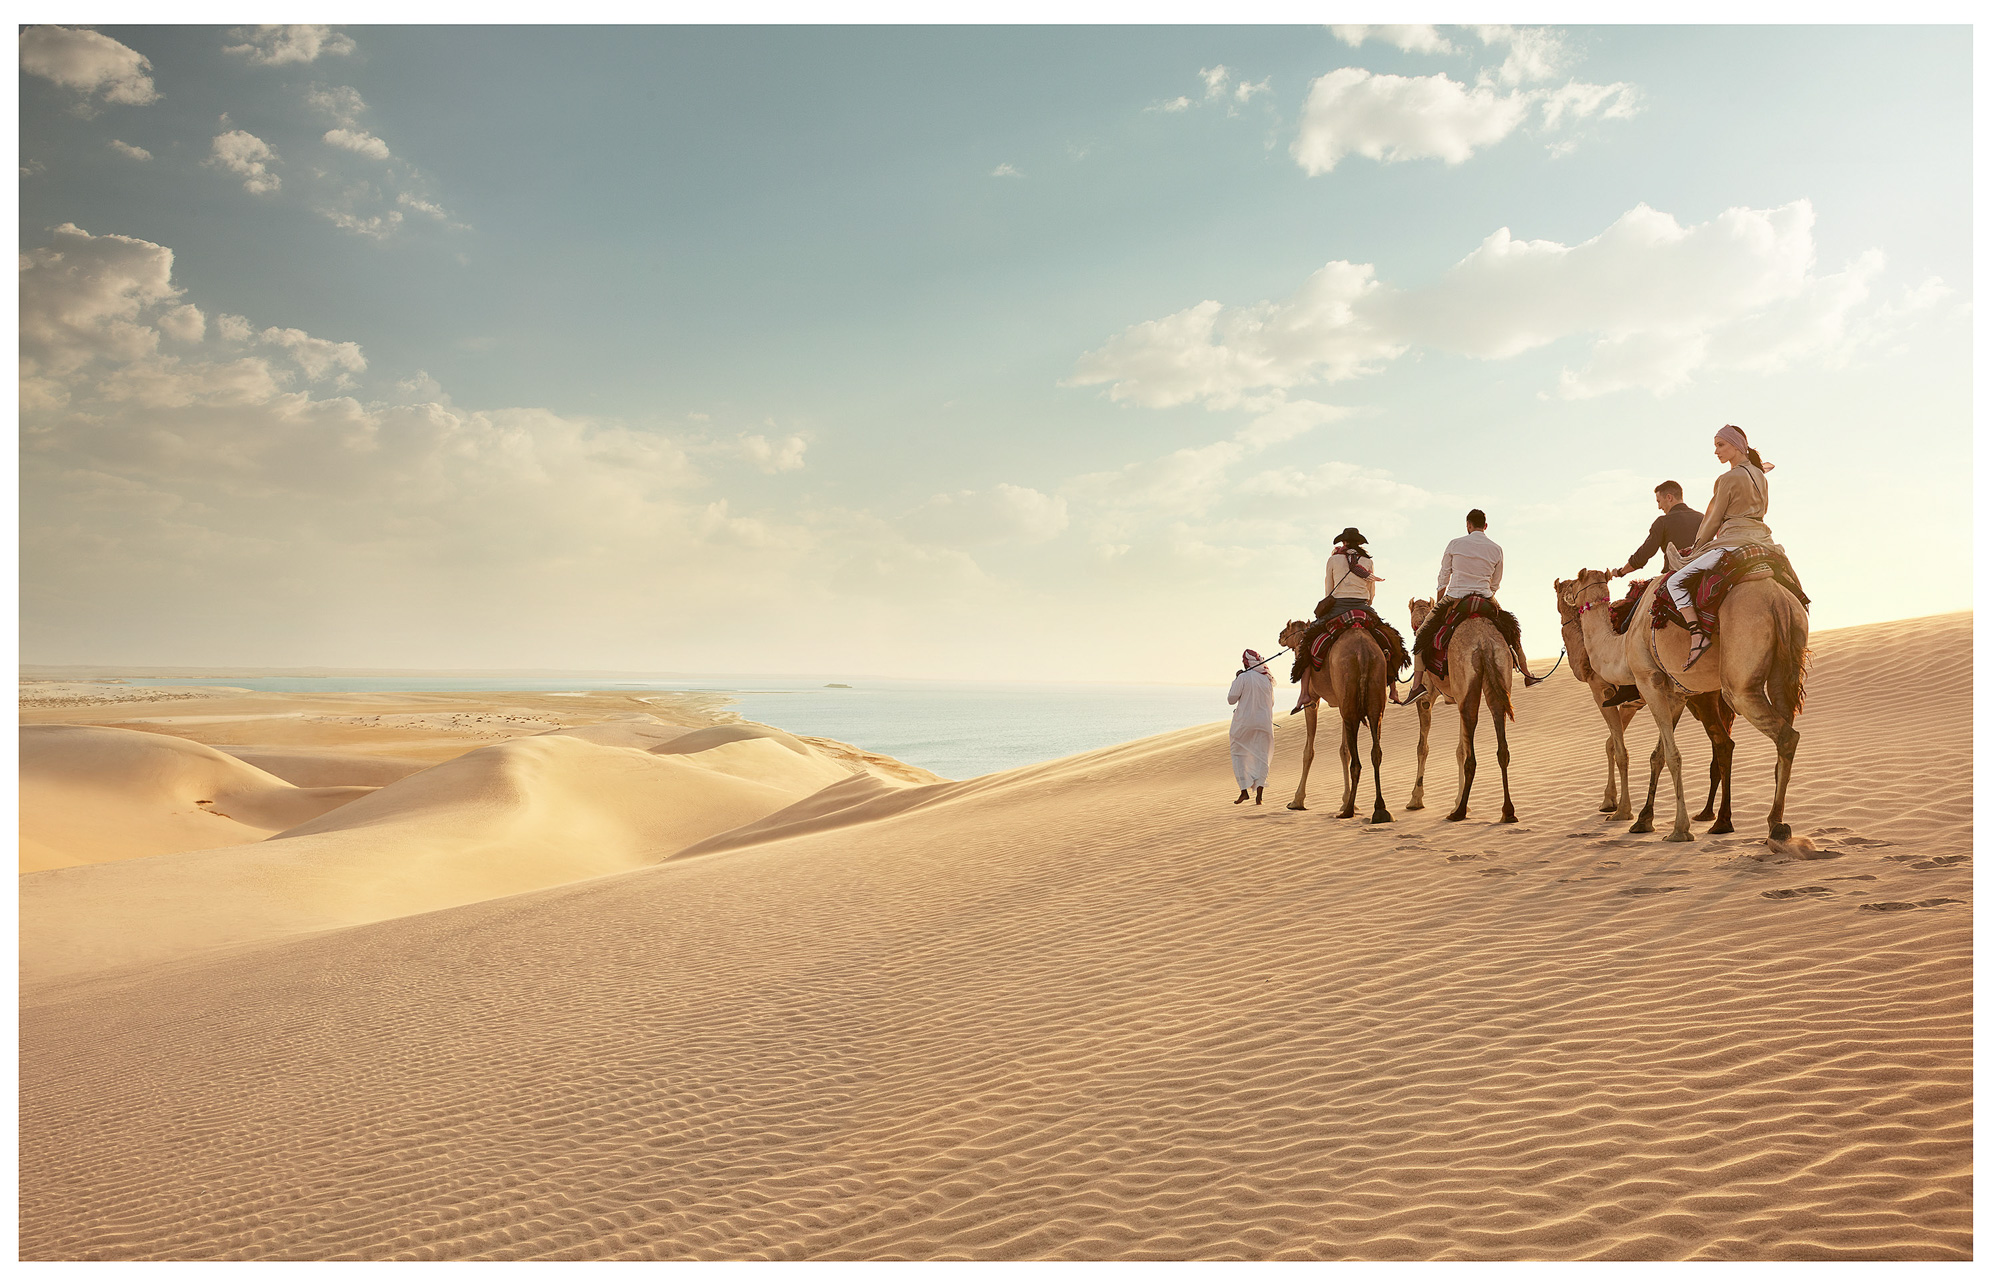 557-grid-qatar-camels-n1a8461-wip-7v2-a